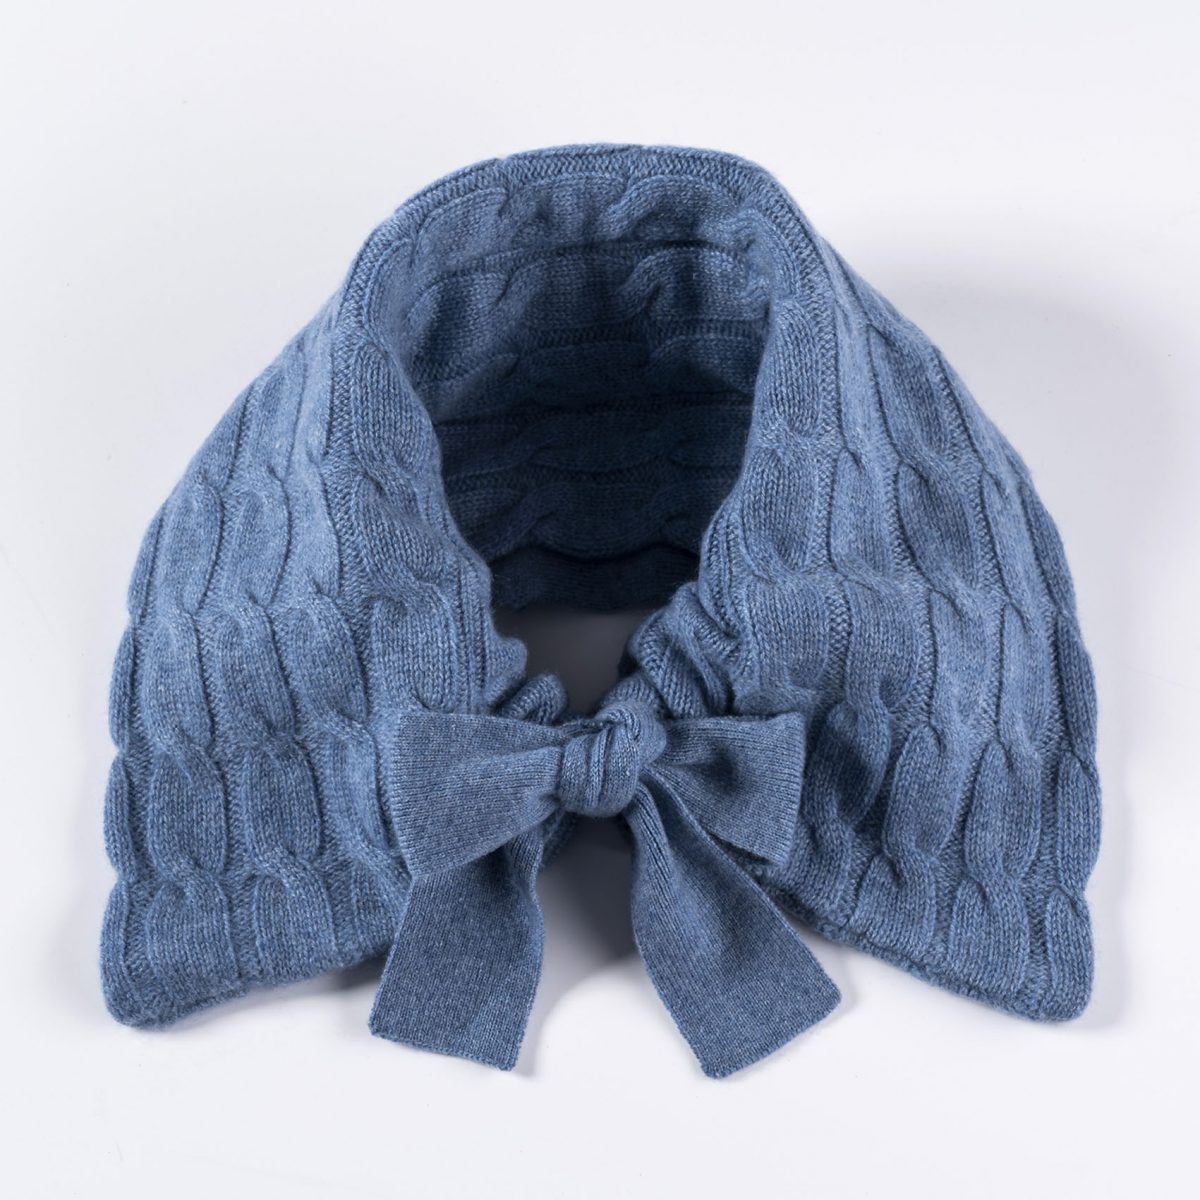 Stylischer ©Neckwarmer aus 100% Cashmere in blau Kragen statt Schal